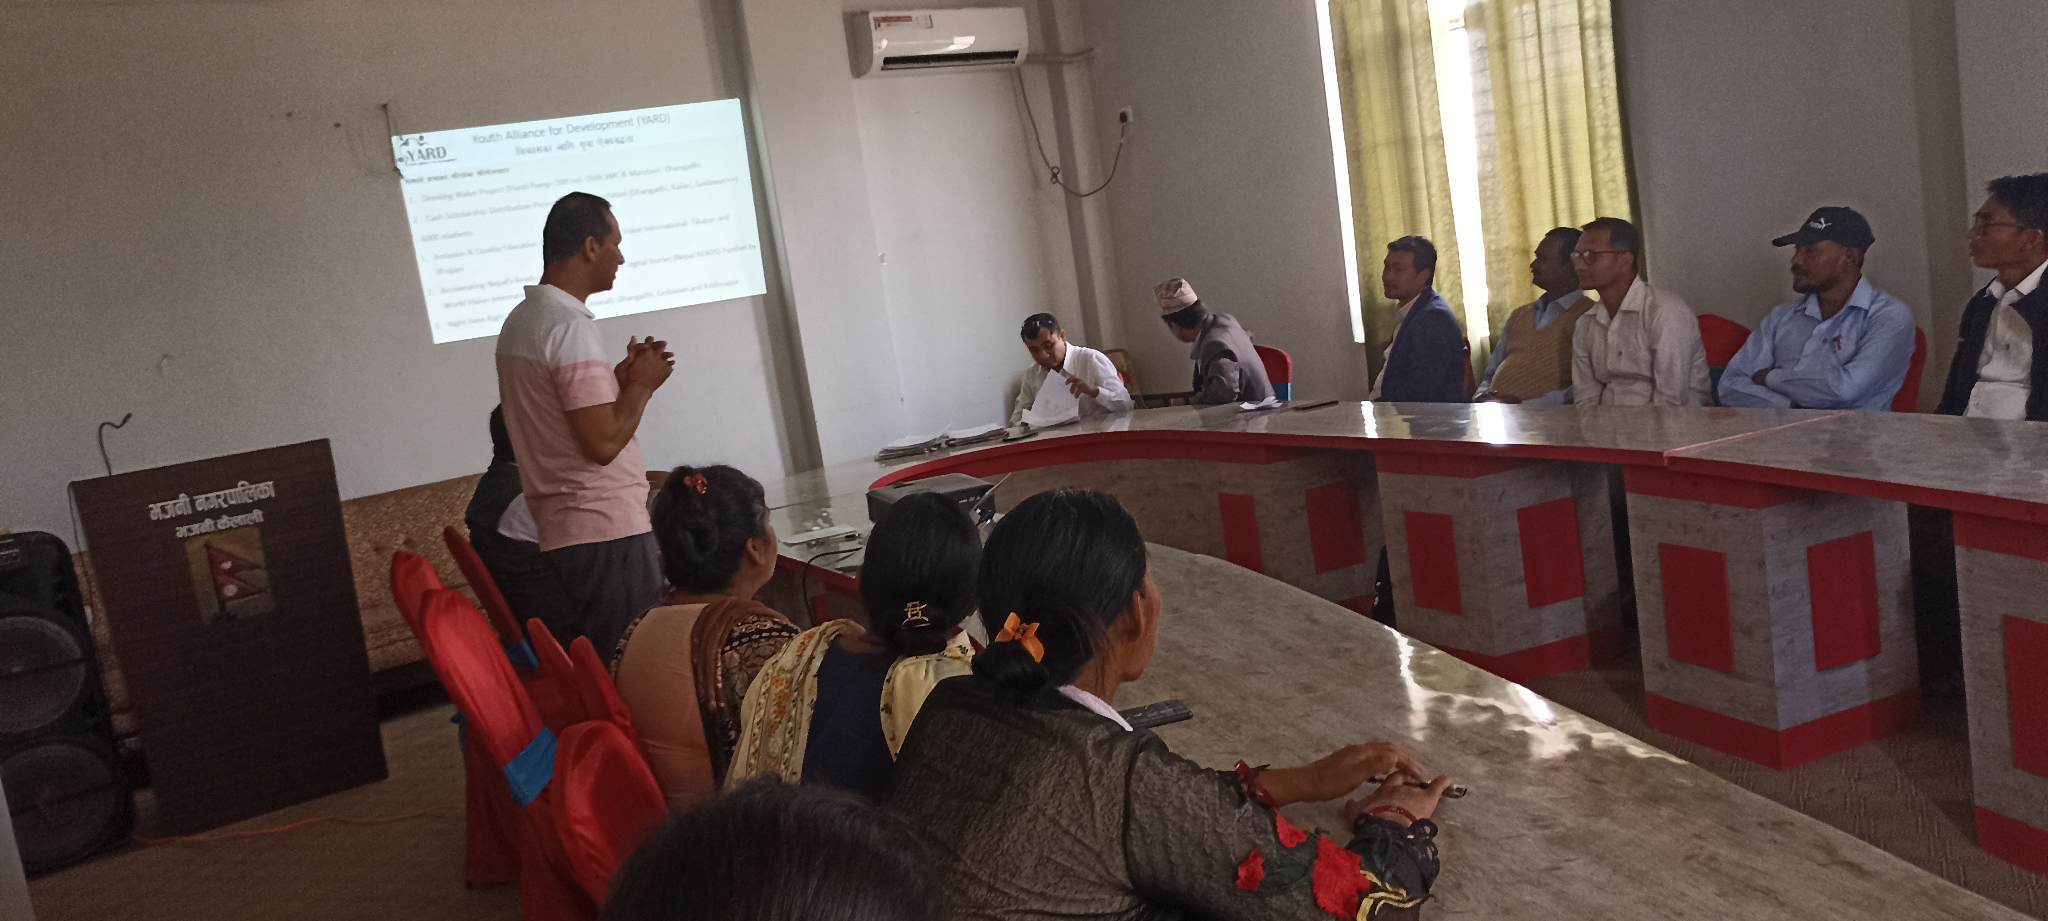 भजनिमा समावेशी तथा गुणस्तरीय शिक्षा IQE र नेपाल रिड परियोजनाको  प्रारम्भ गोष्ठी सम्पन्न      